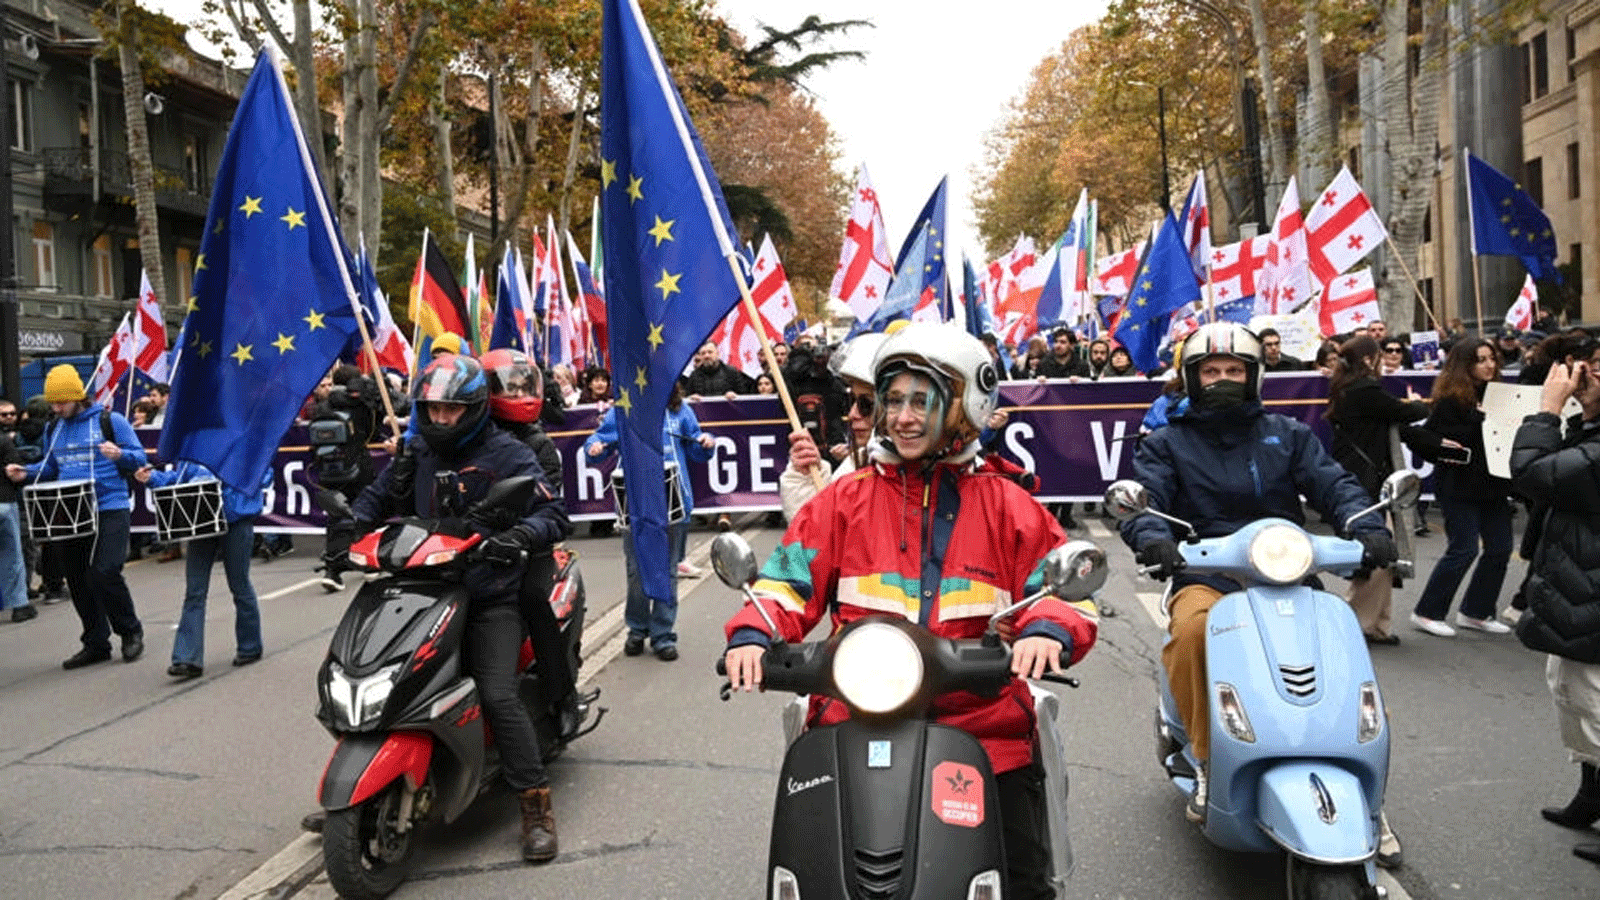 غالبية السكان يؤيدون عضوية الاتحاد الأوروبي في جورجيا